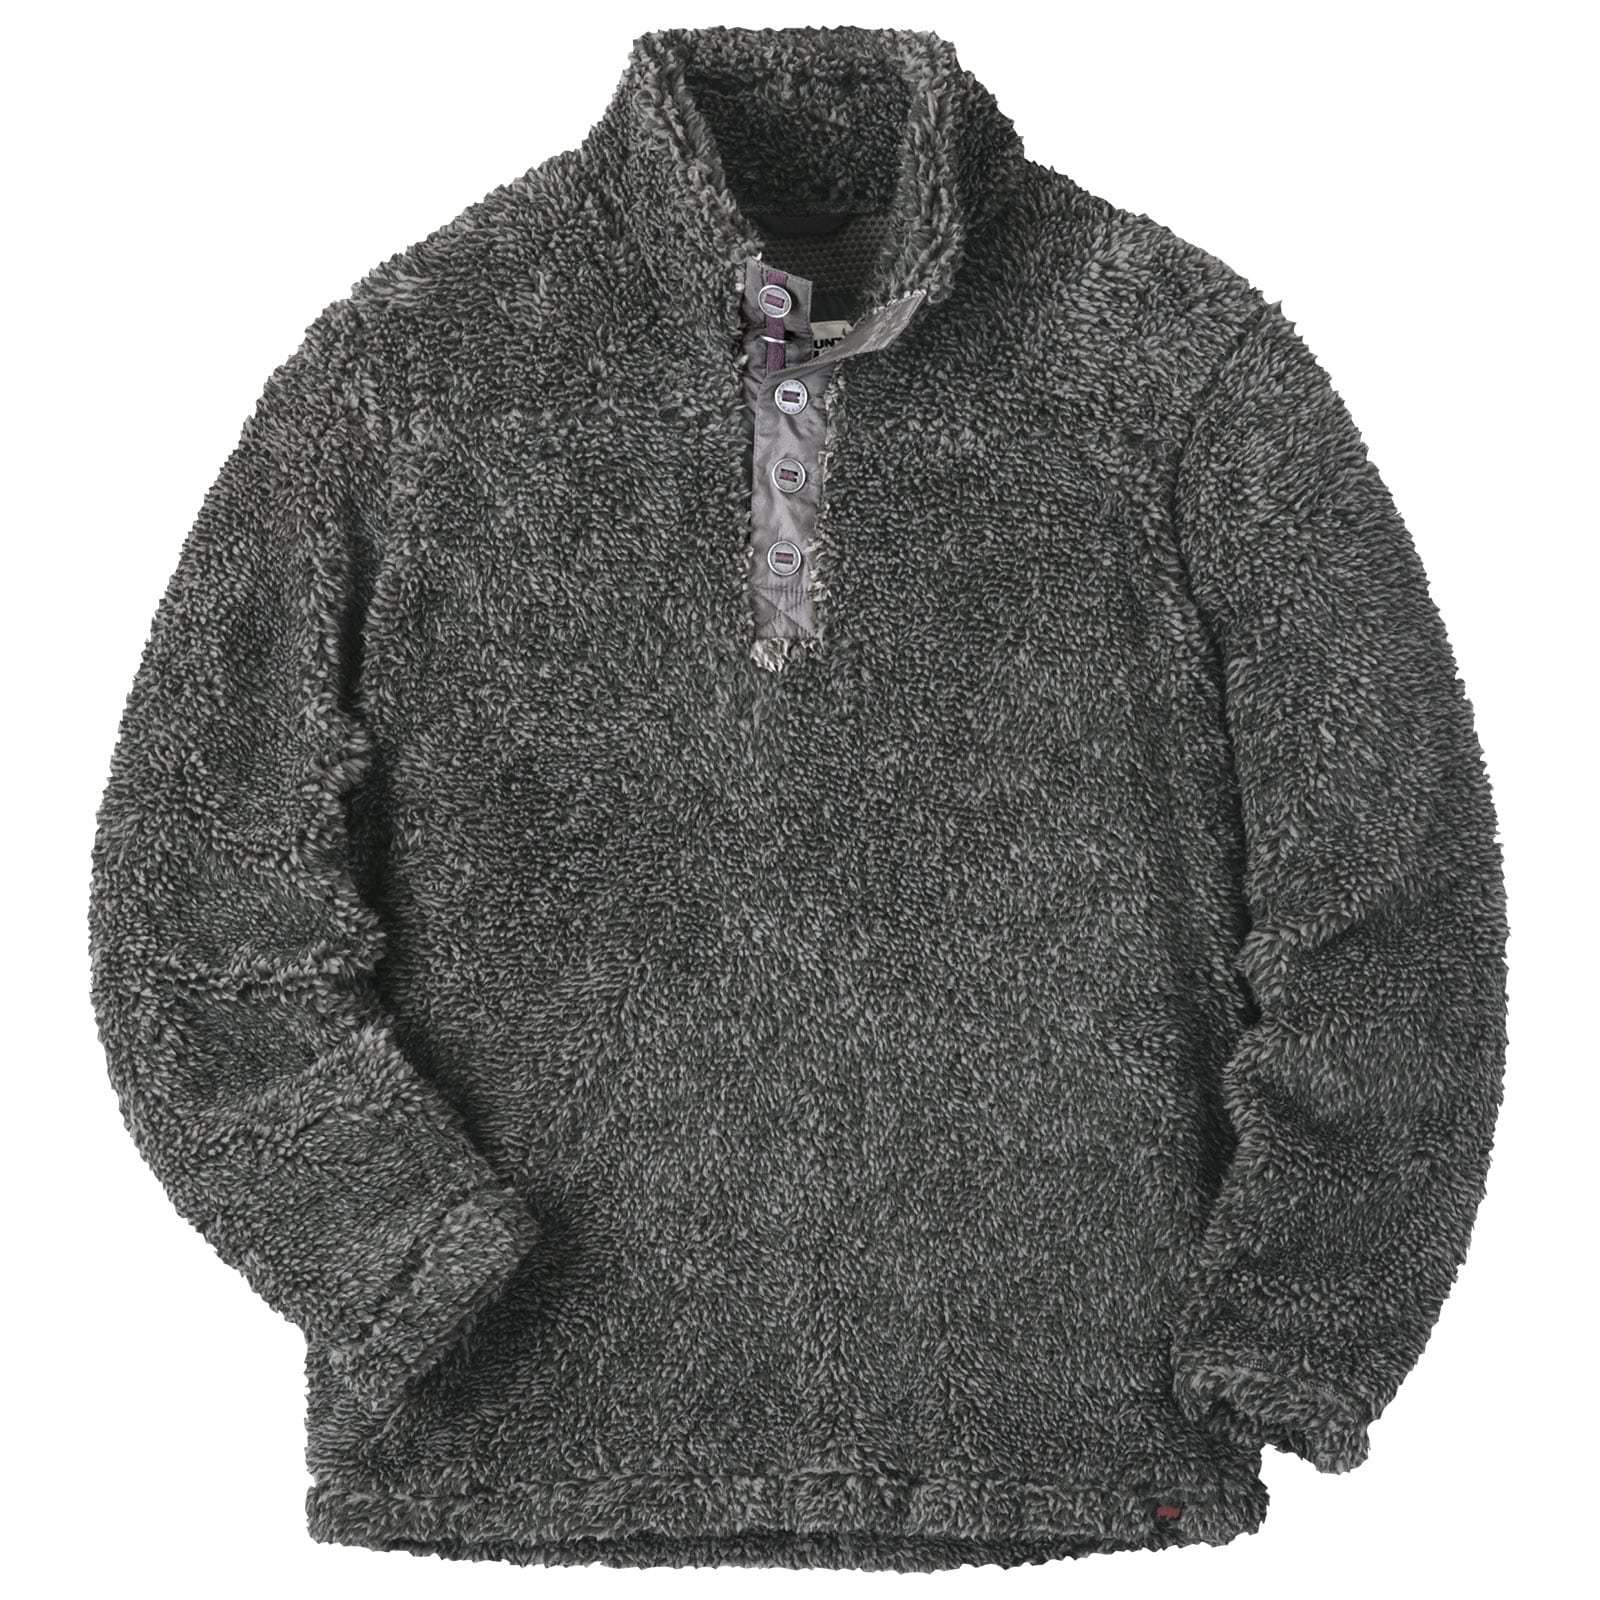 Apres Pullover | Men's High Pile Fleece Pullover | MK